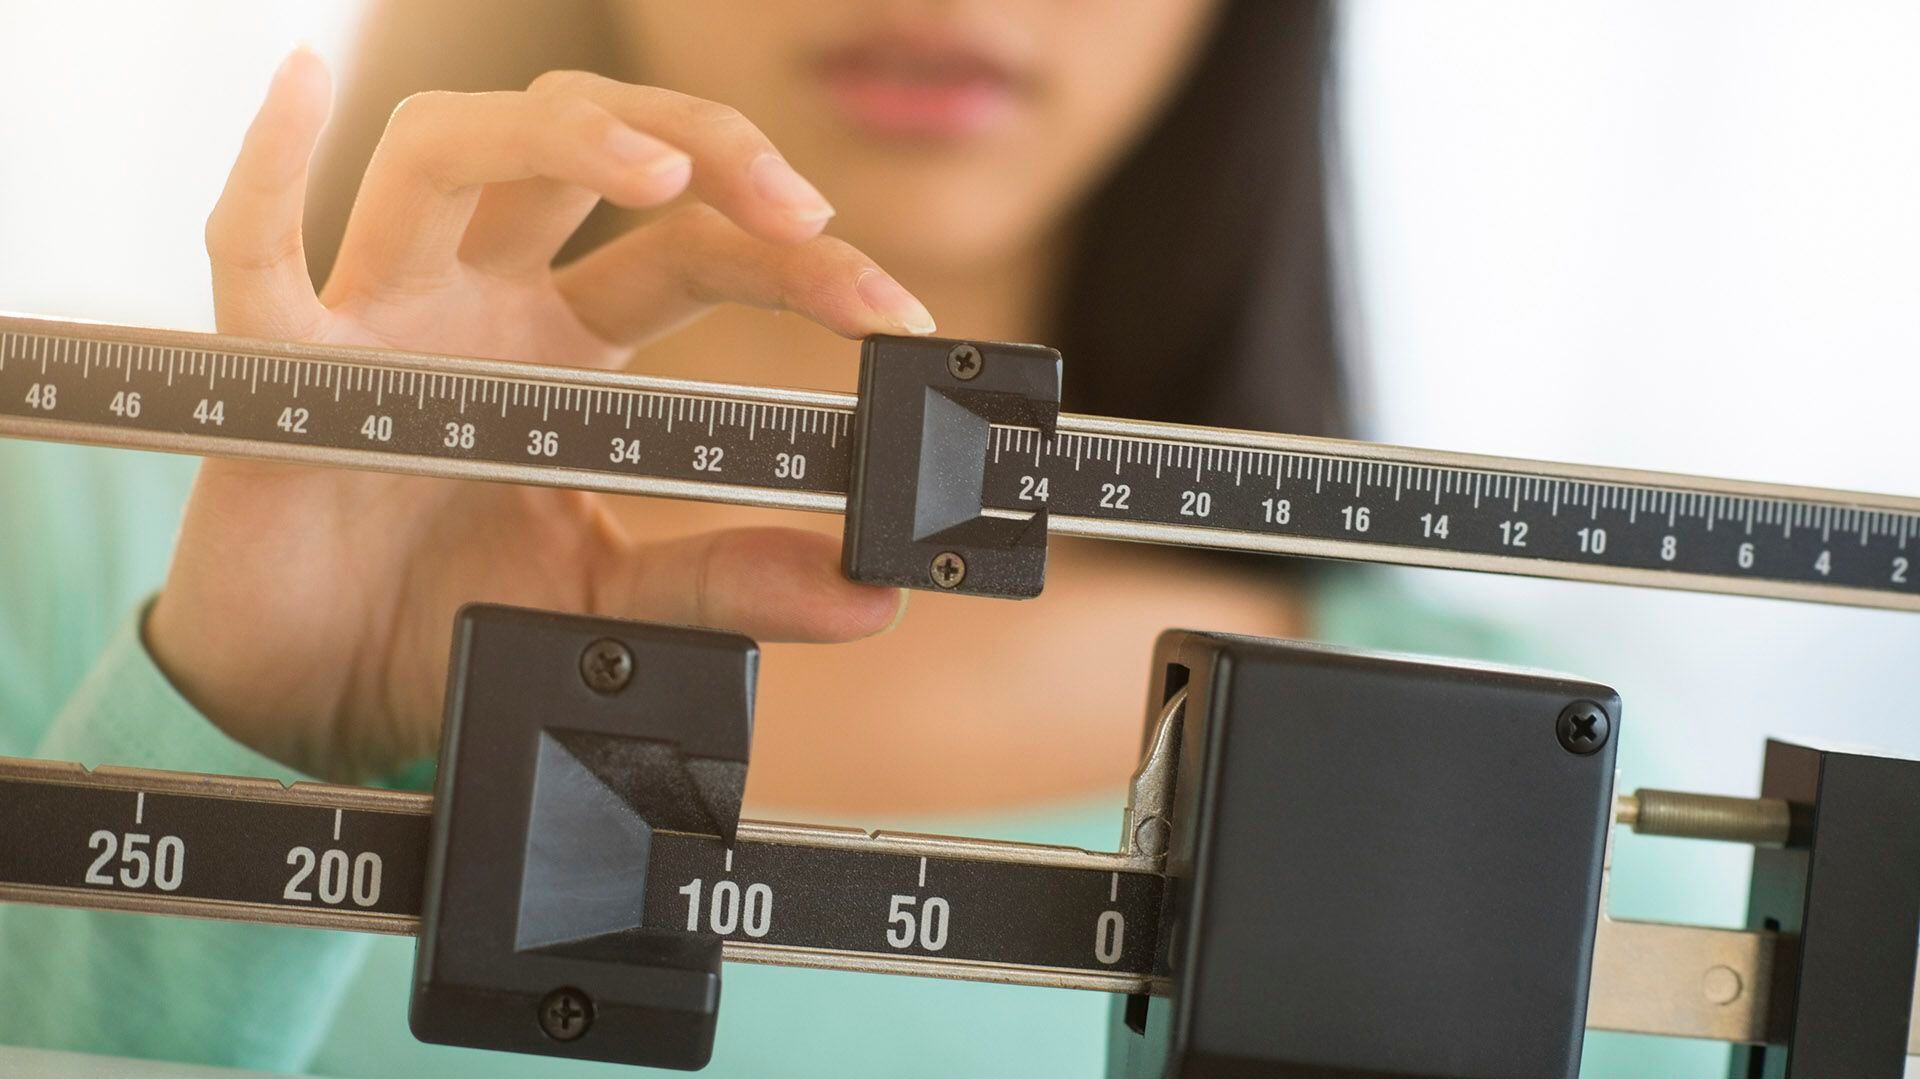 La obesidad y el sobrepeso están asociados a un importante número de enfermedades, pero con solo bajar de peso no se revierte por completo esta situación / (iStock)